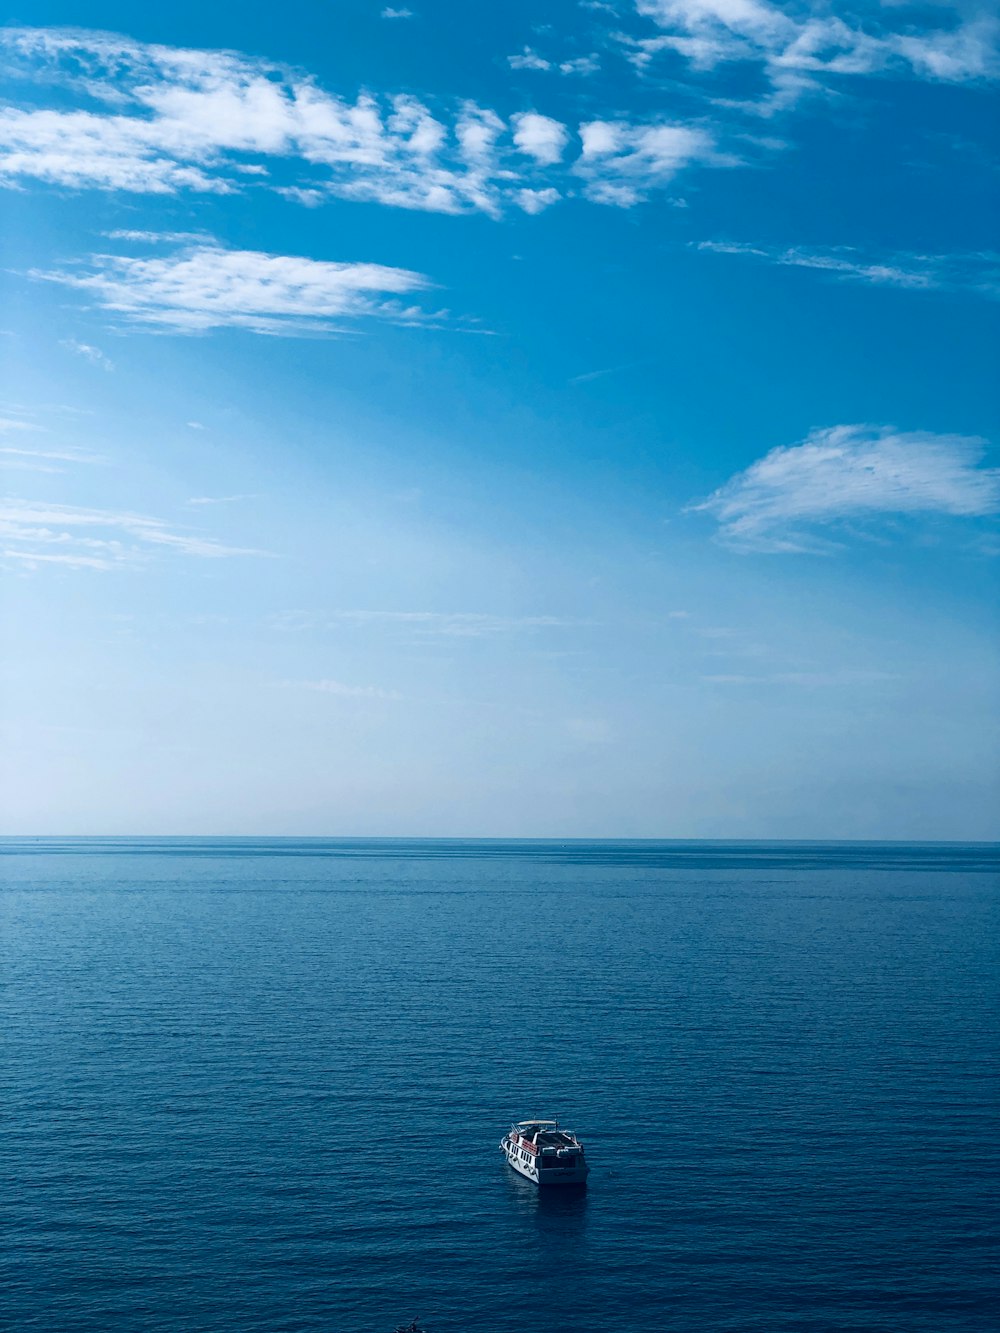 barco na água sob céu azul e nuvens brancas durante o dia